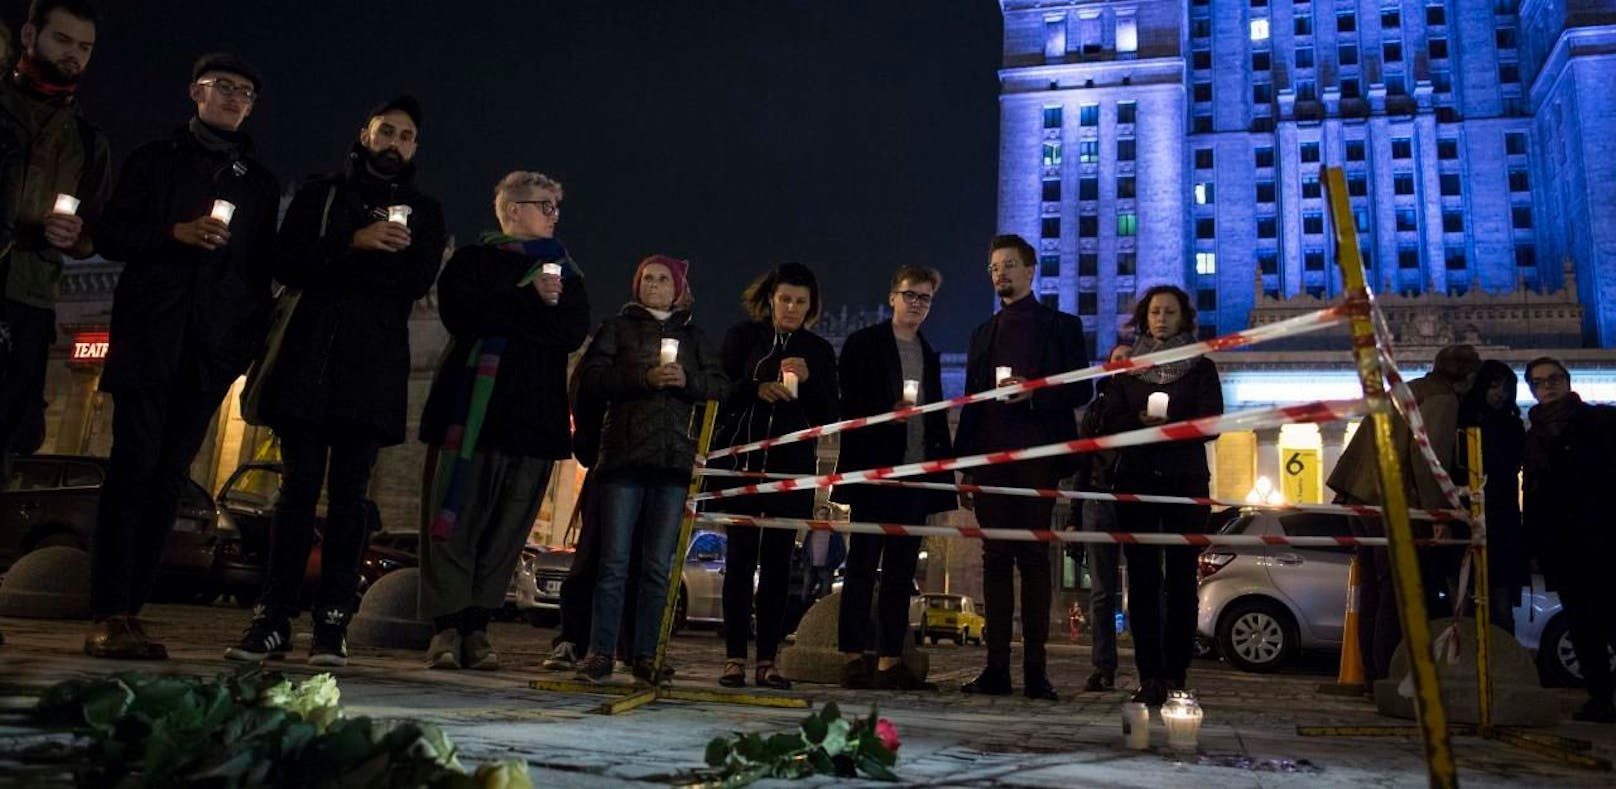 Menschen zünden vor dem Kulturpalast in Warschau Kerzen an. Hier steckte sich der Mann selbst in Brand.